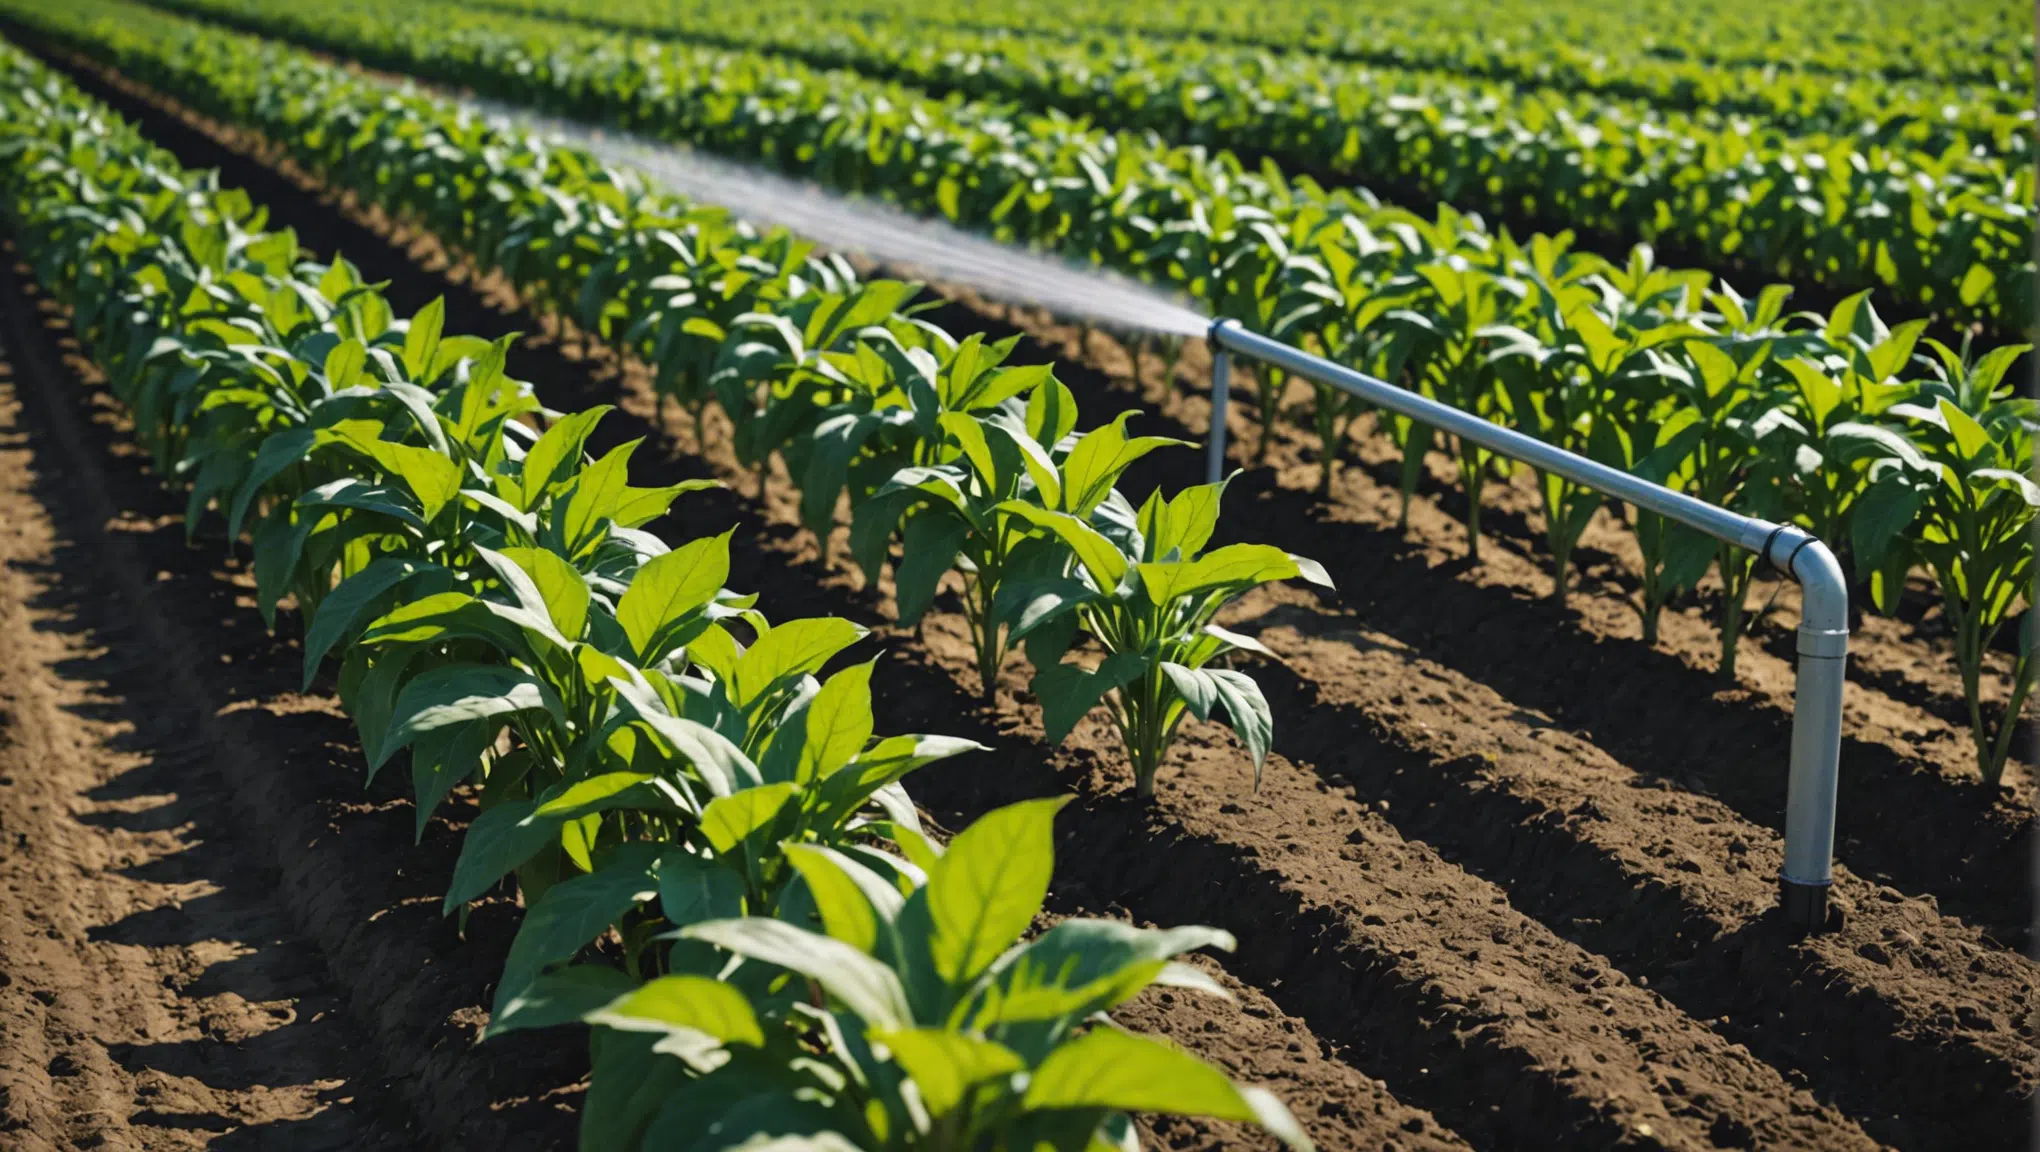 découvrez les nombreux avantages de l'irrigation goutte à goutte en agriculture pour une utilisation efficace de l'eau et une meilleure croissance des cultures.